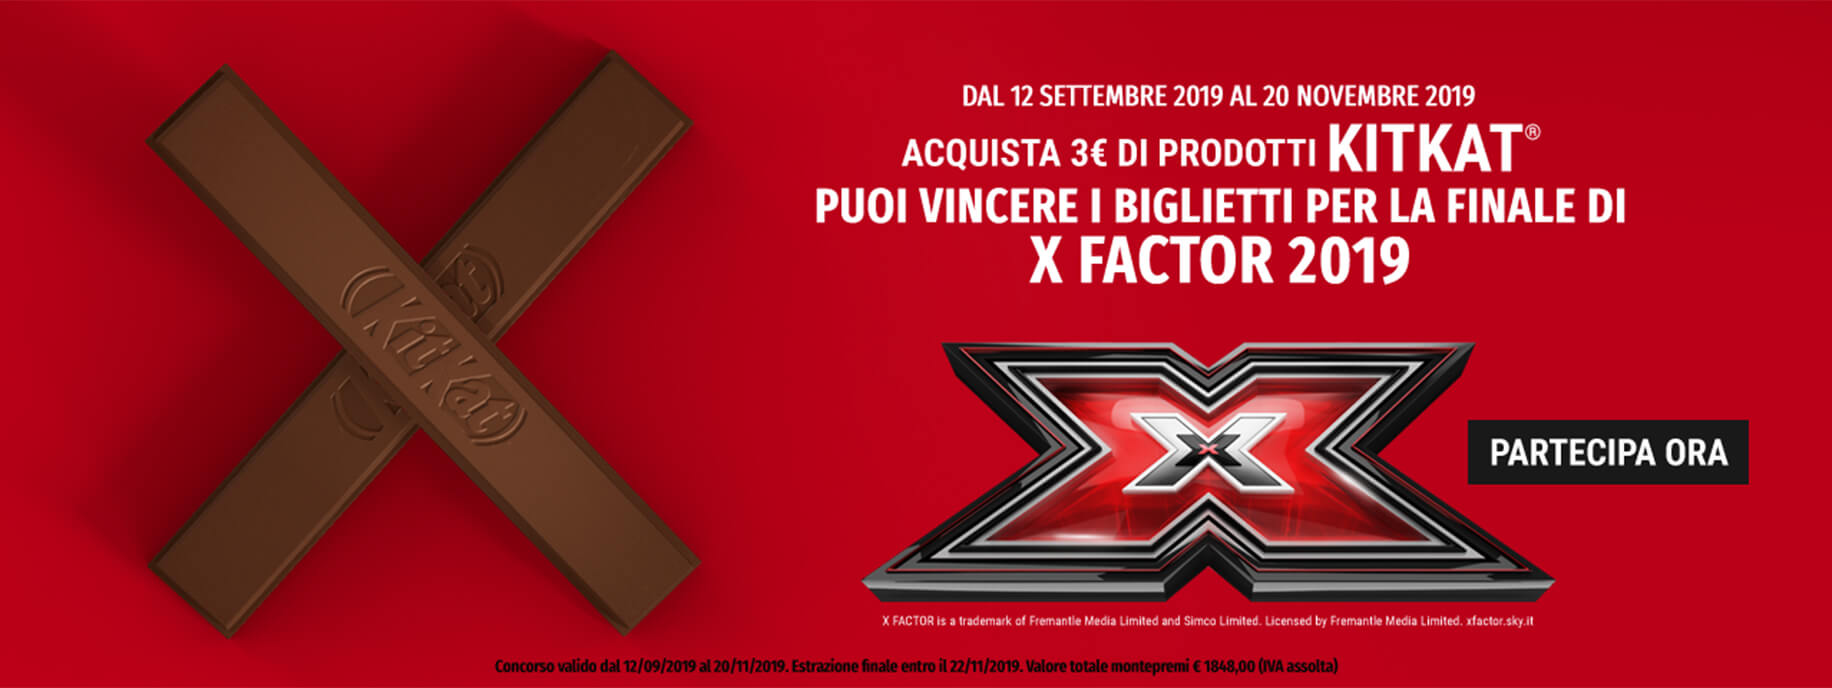 concorso acquista 3€ di kit kat e puoi vincere i biglietti per la finale di X factor 2019